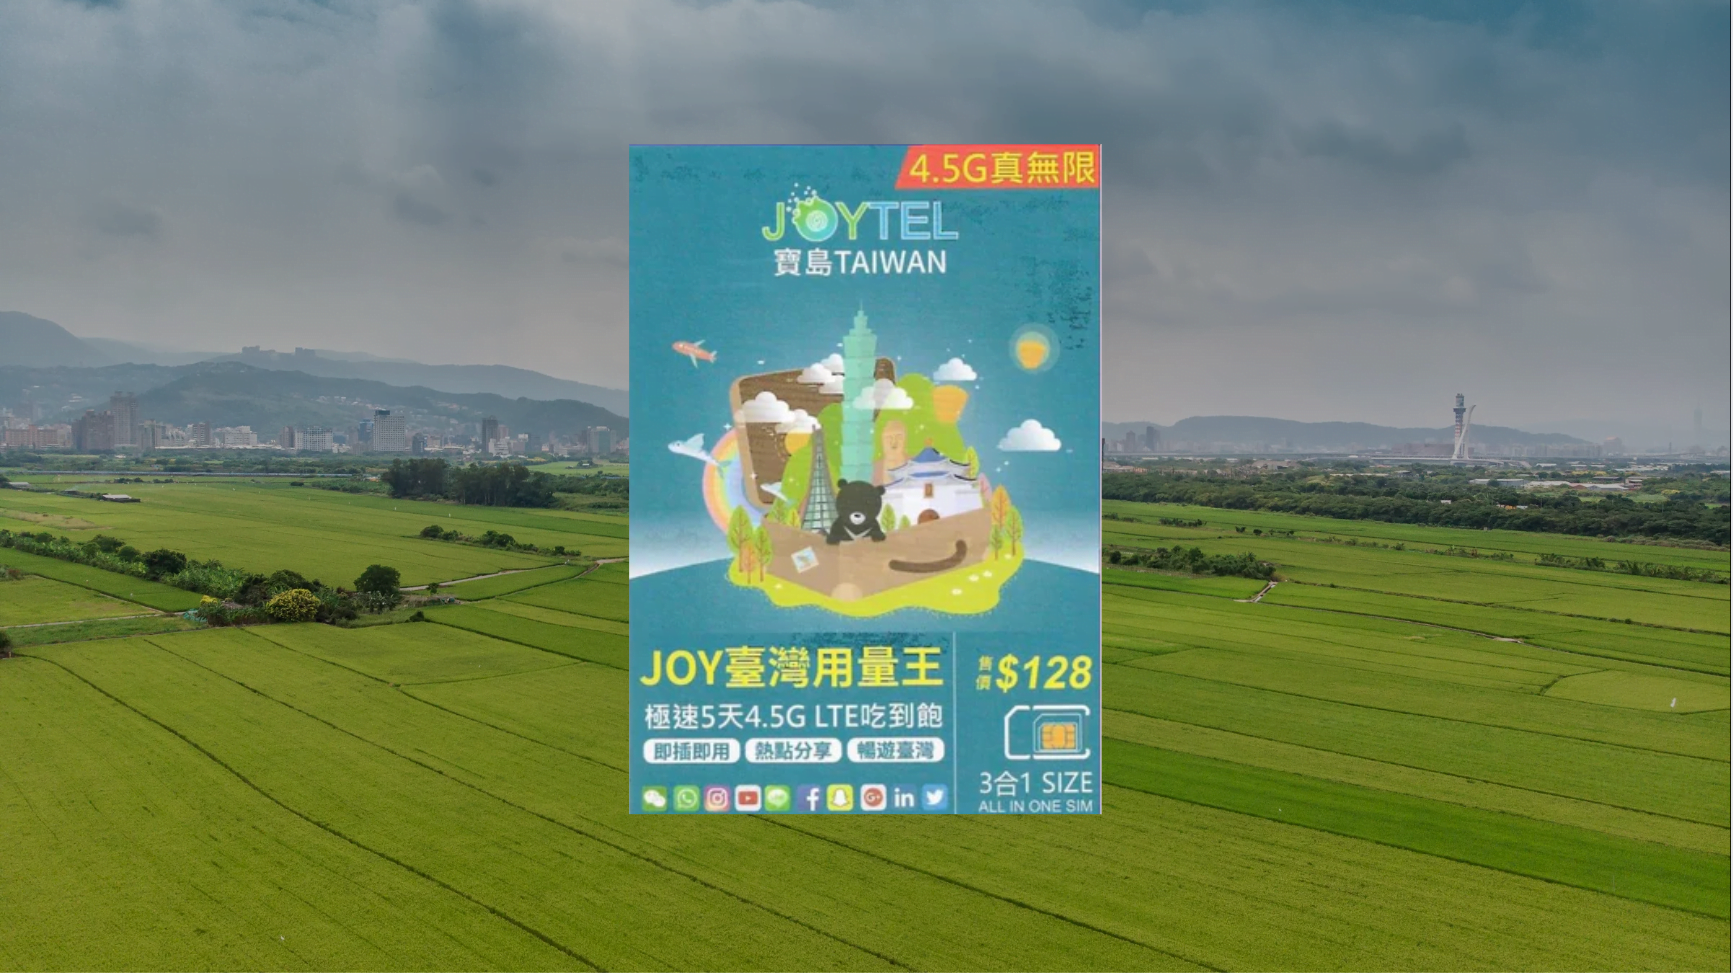 【售價】JOYTEL 極速 台灣 5日 4.5G / 5G 無限數據上網卡，網店平賣 